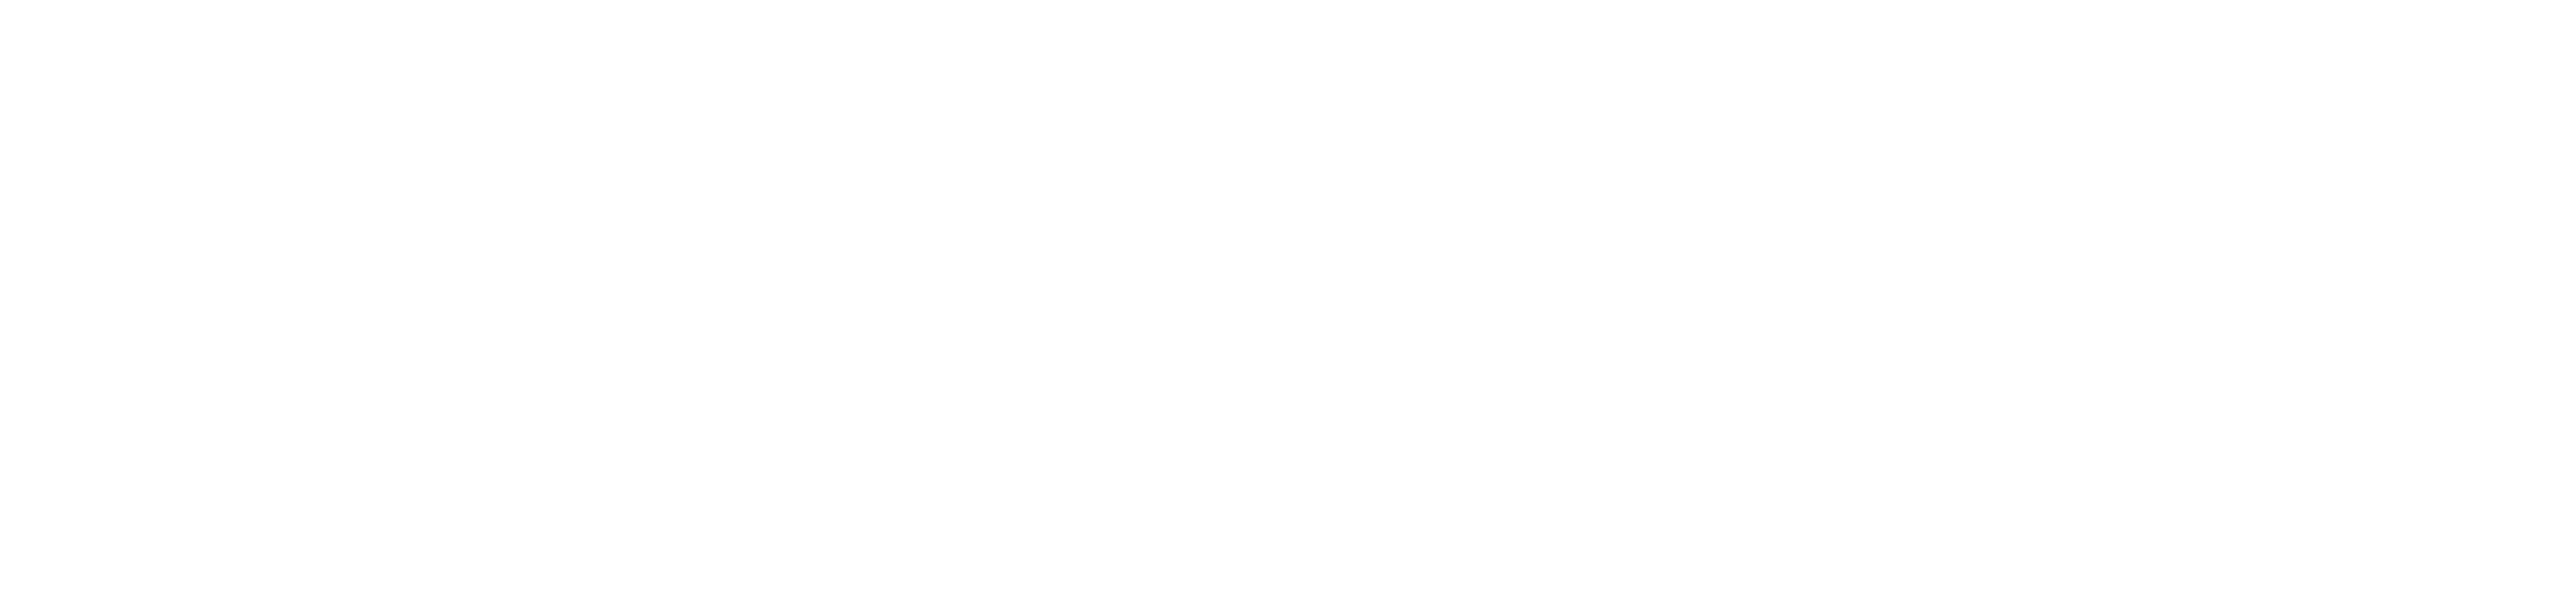 Logo S L 2018 white